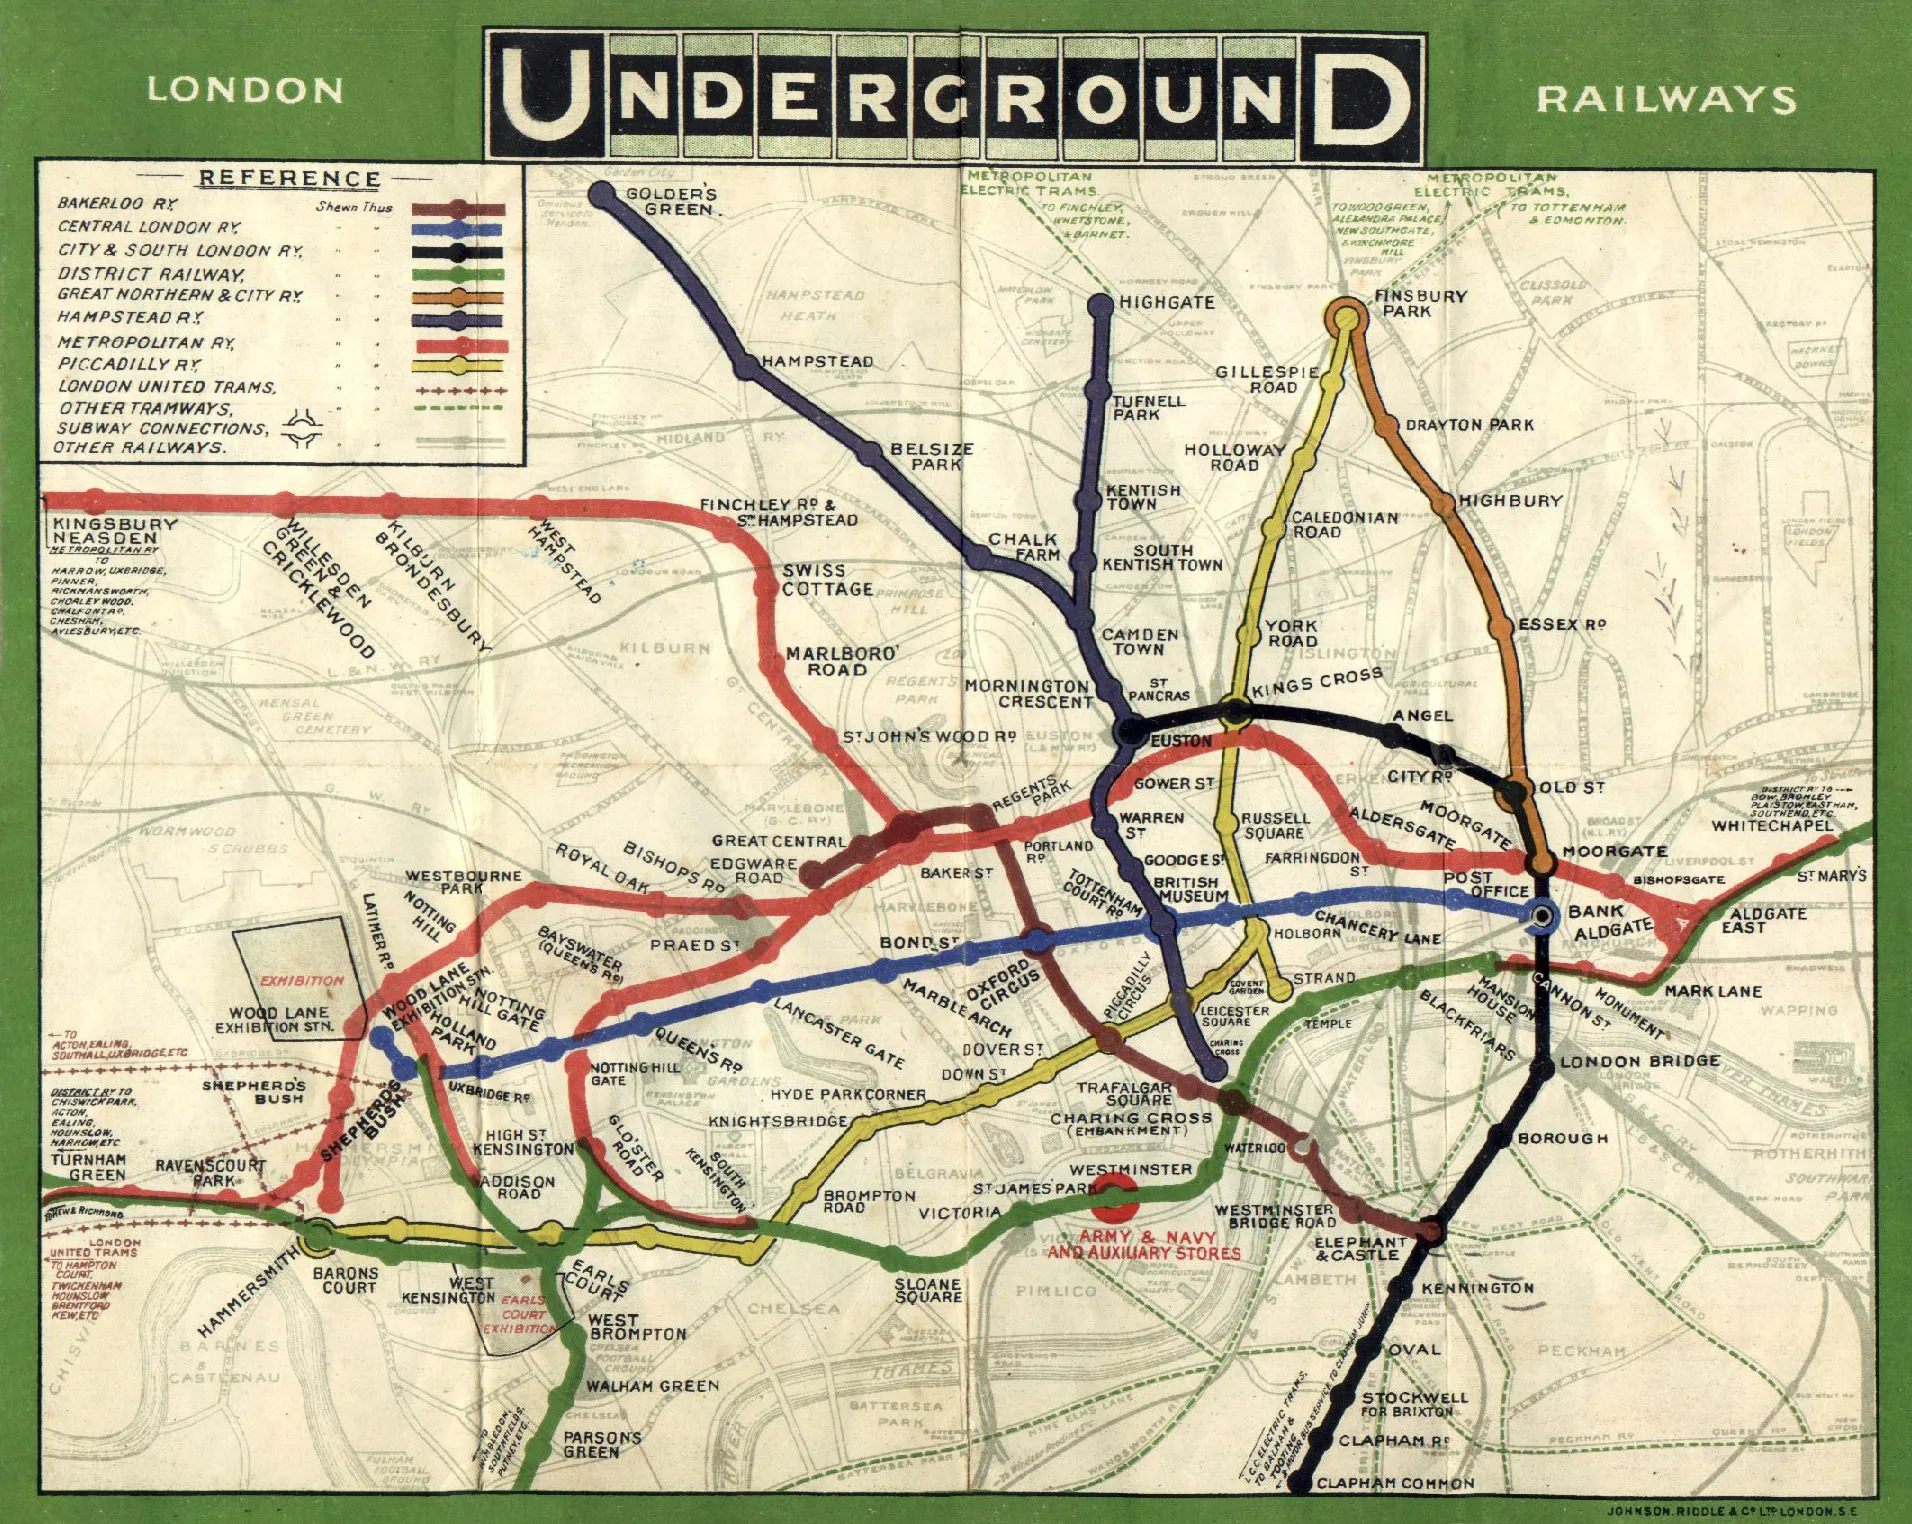 London Underground map in 1908